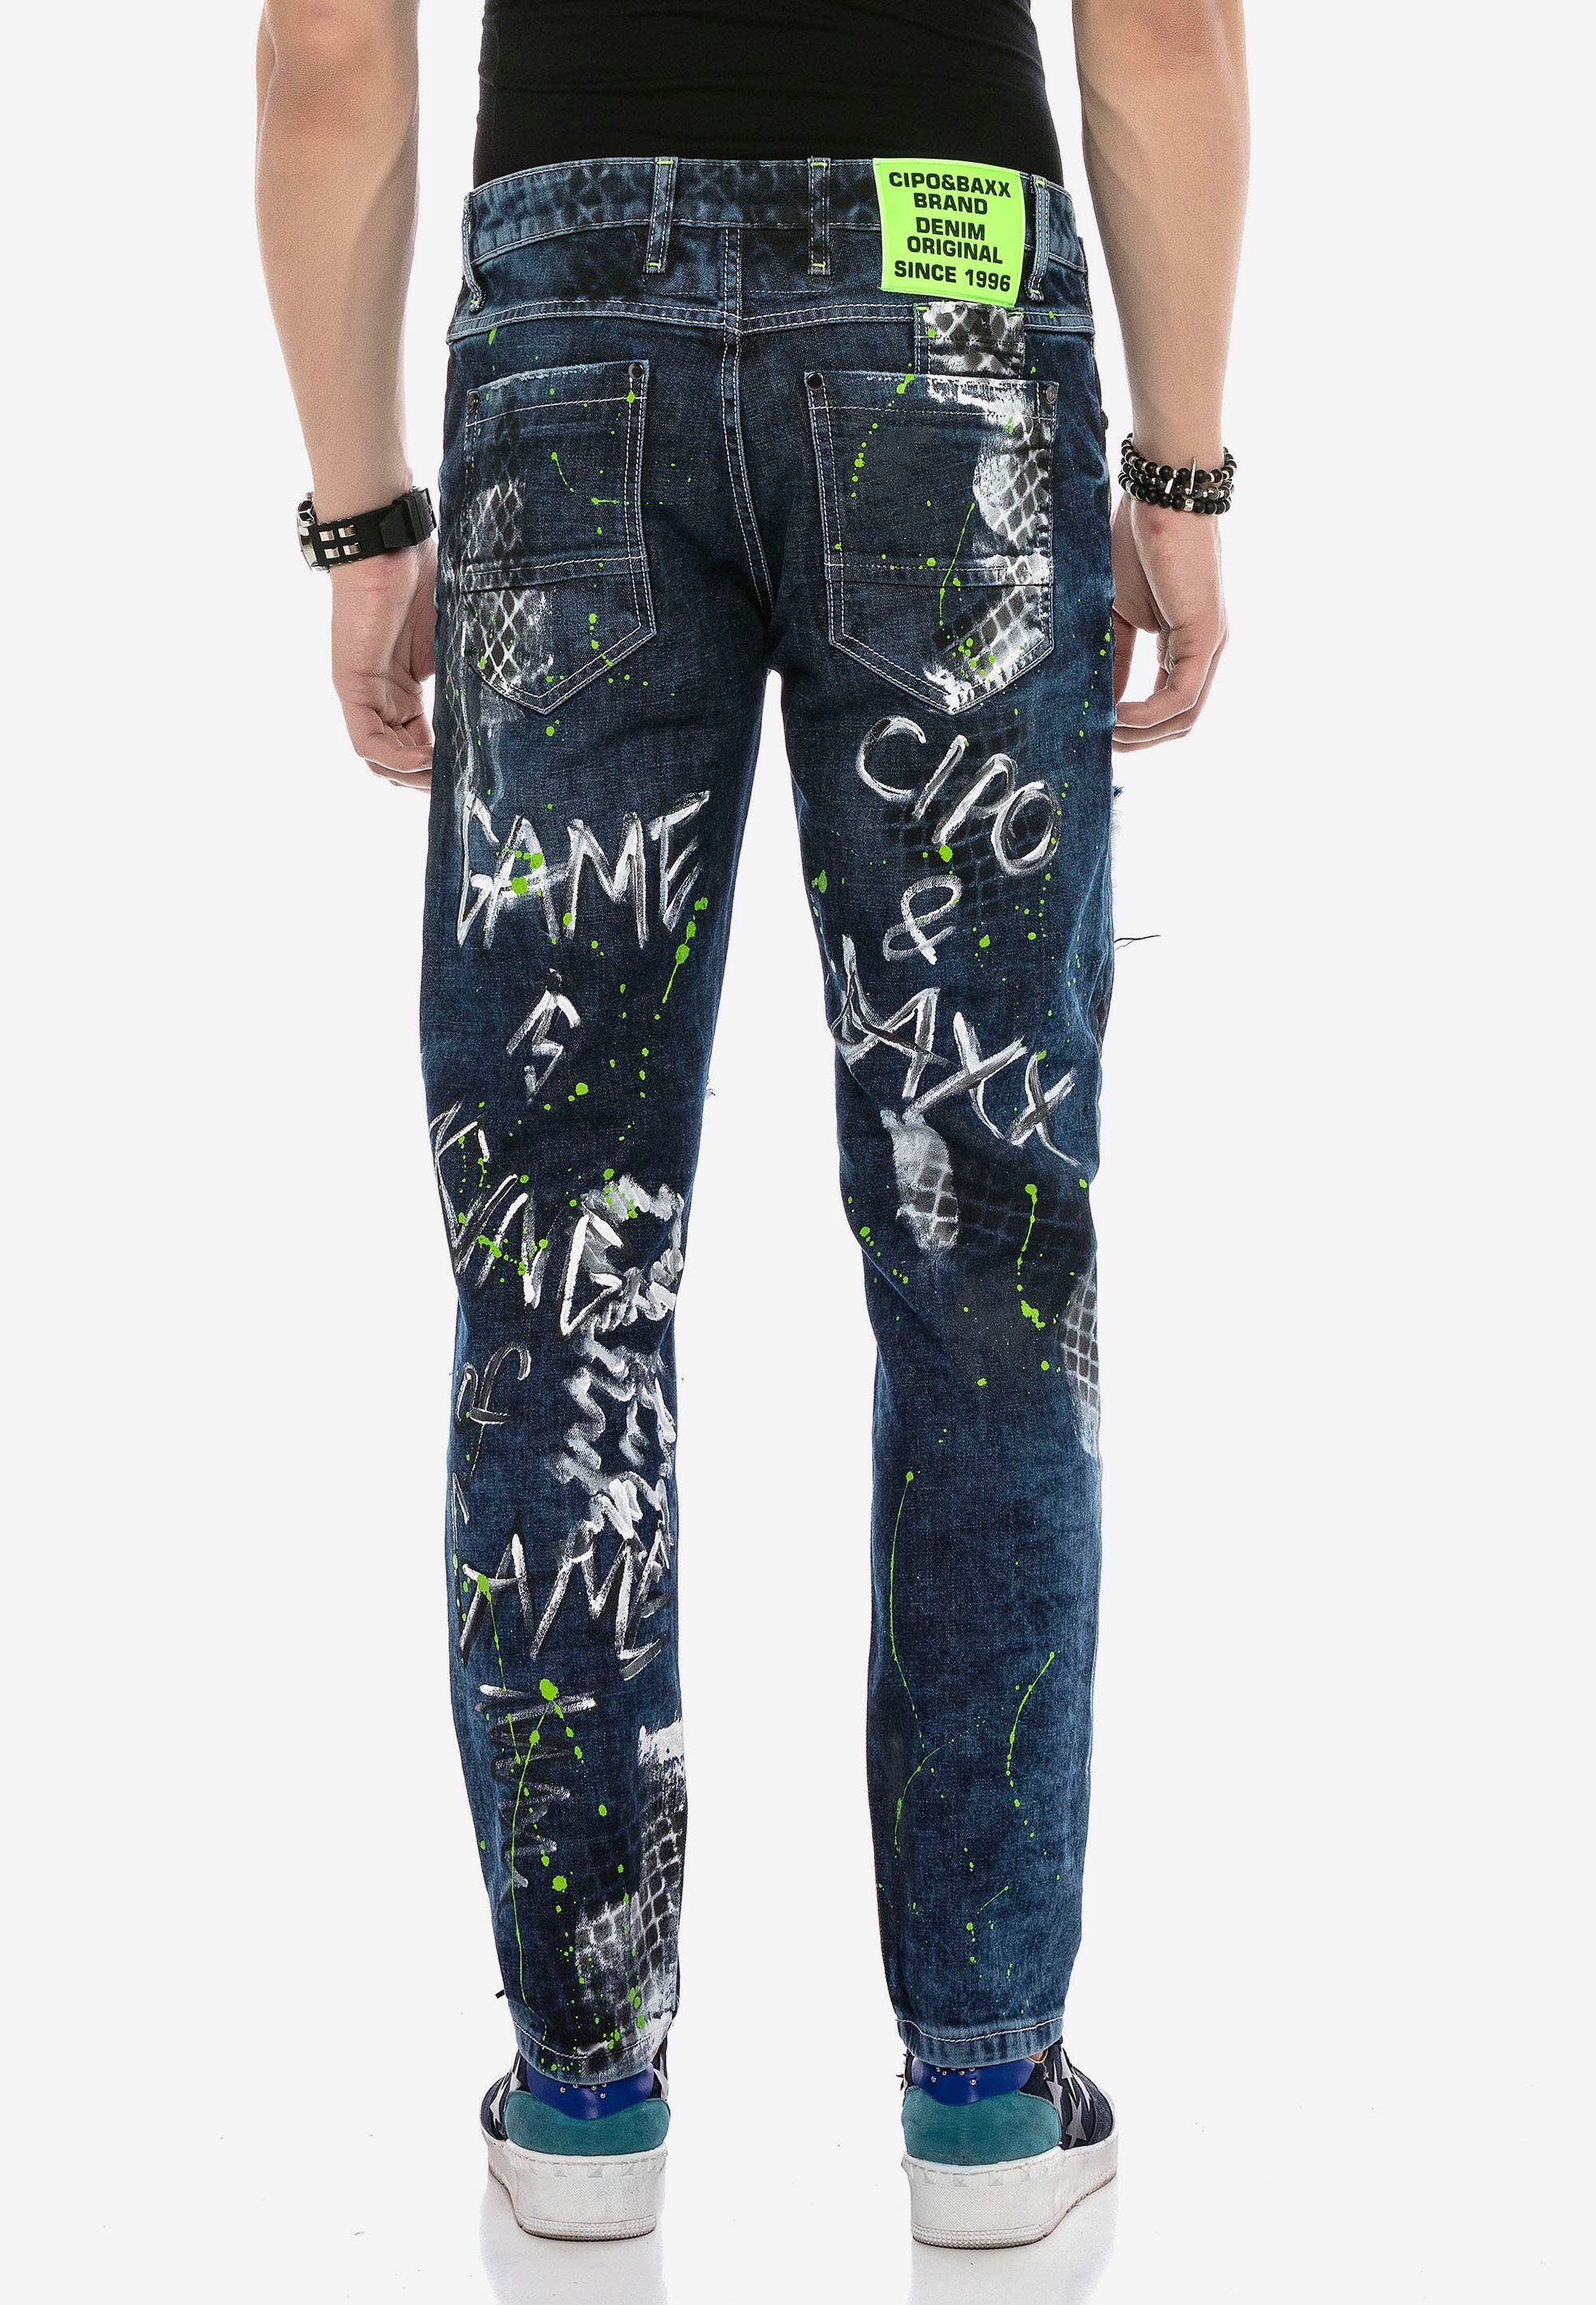 Jeans und Bequeme Baxx & Farbspritzern Nieten mit Cipo